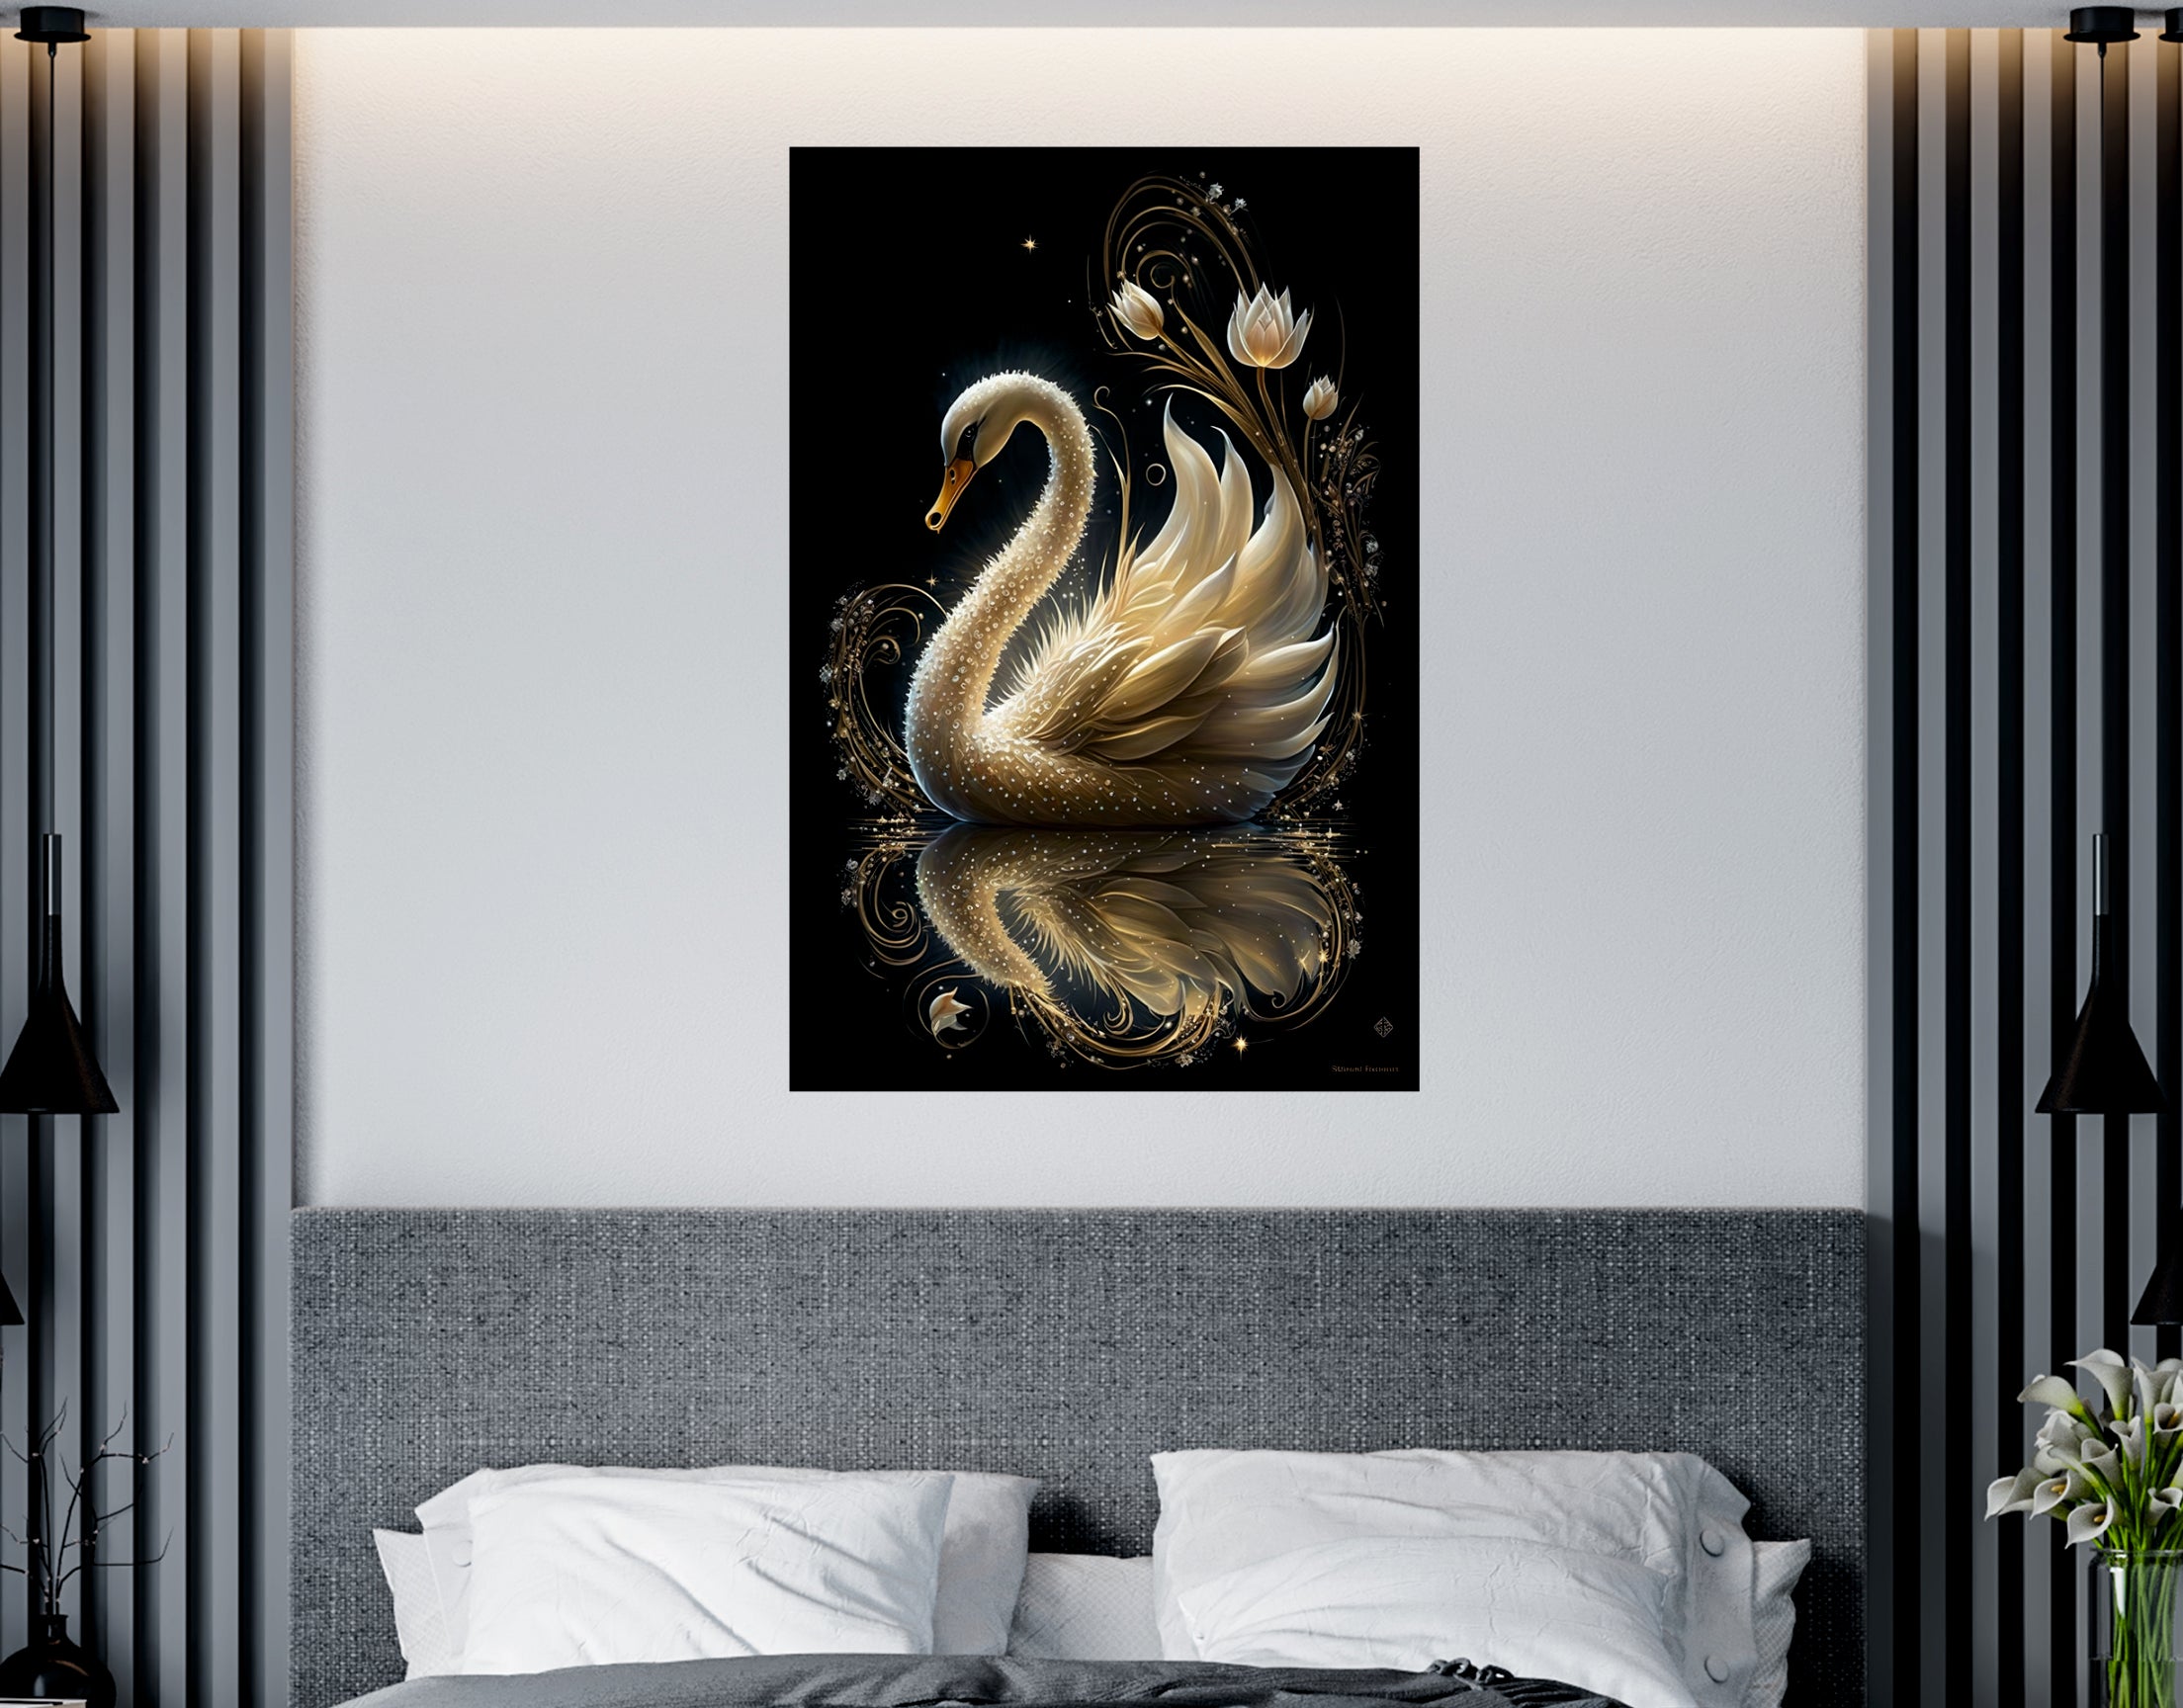 Acrylic Swan Wall Art